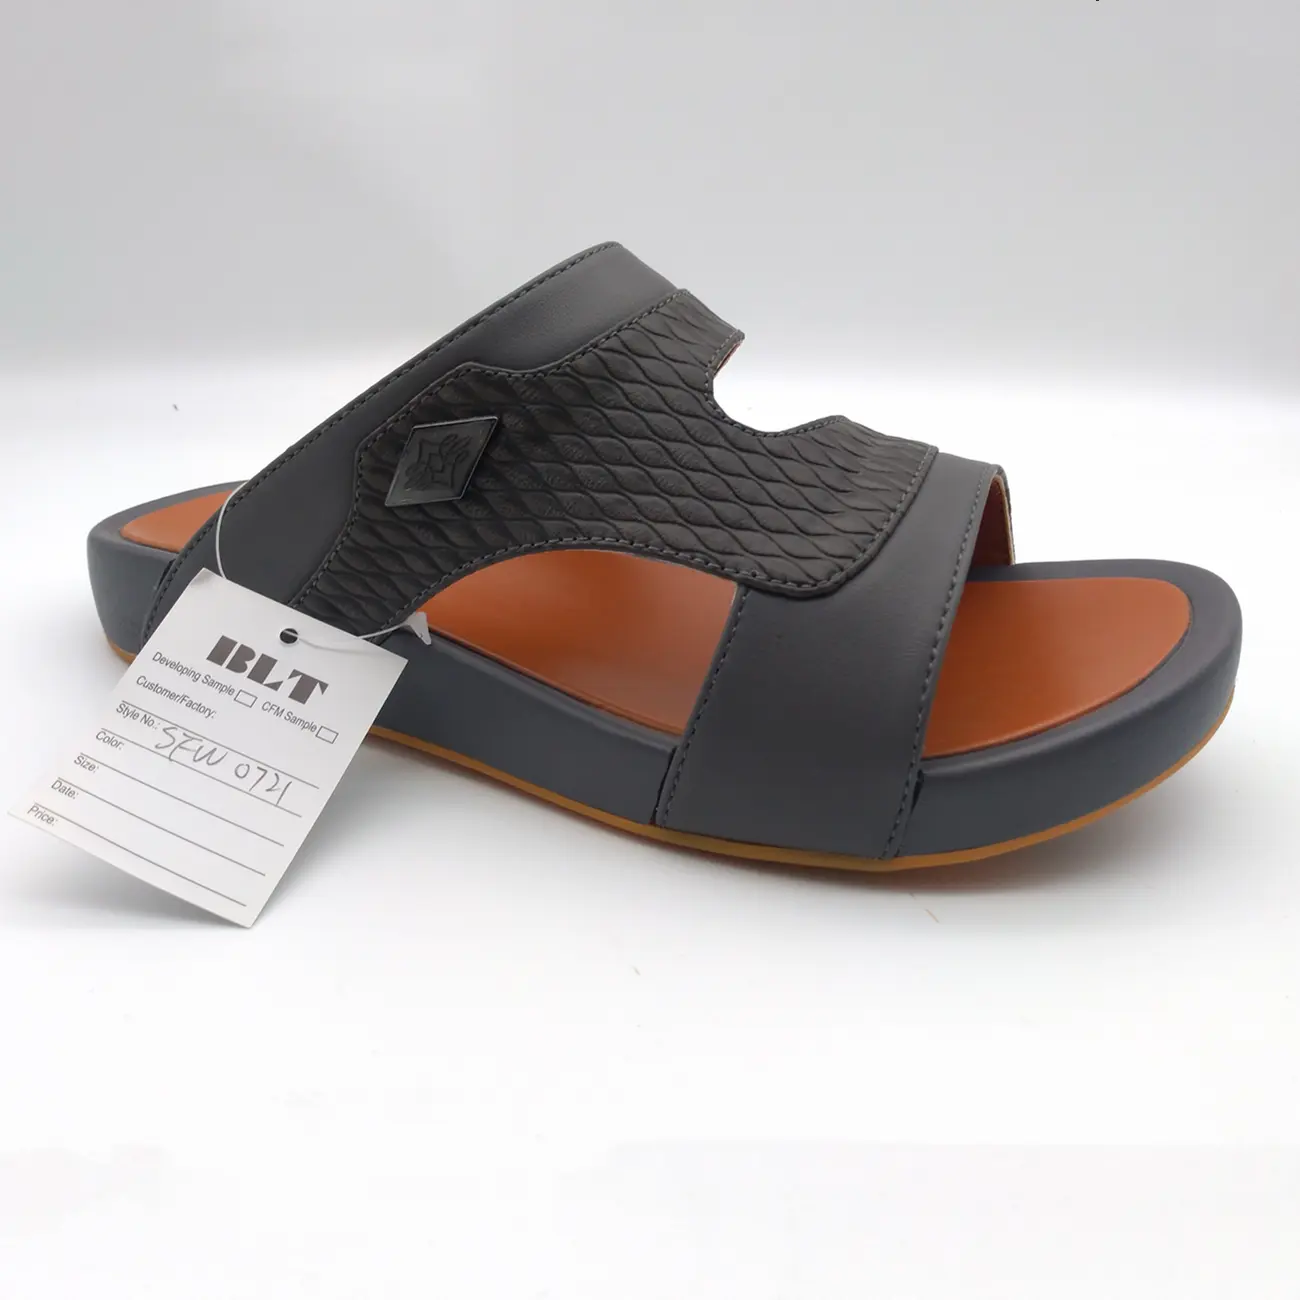 Sandales pour hommes, chaussures décontractées classiques arabes, confortables et respirantes, nouvelle collection été 2020